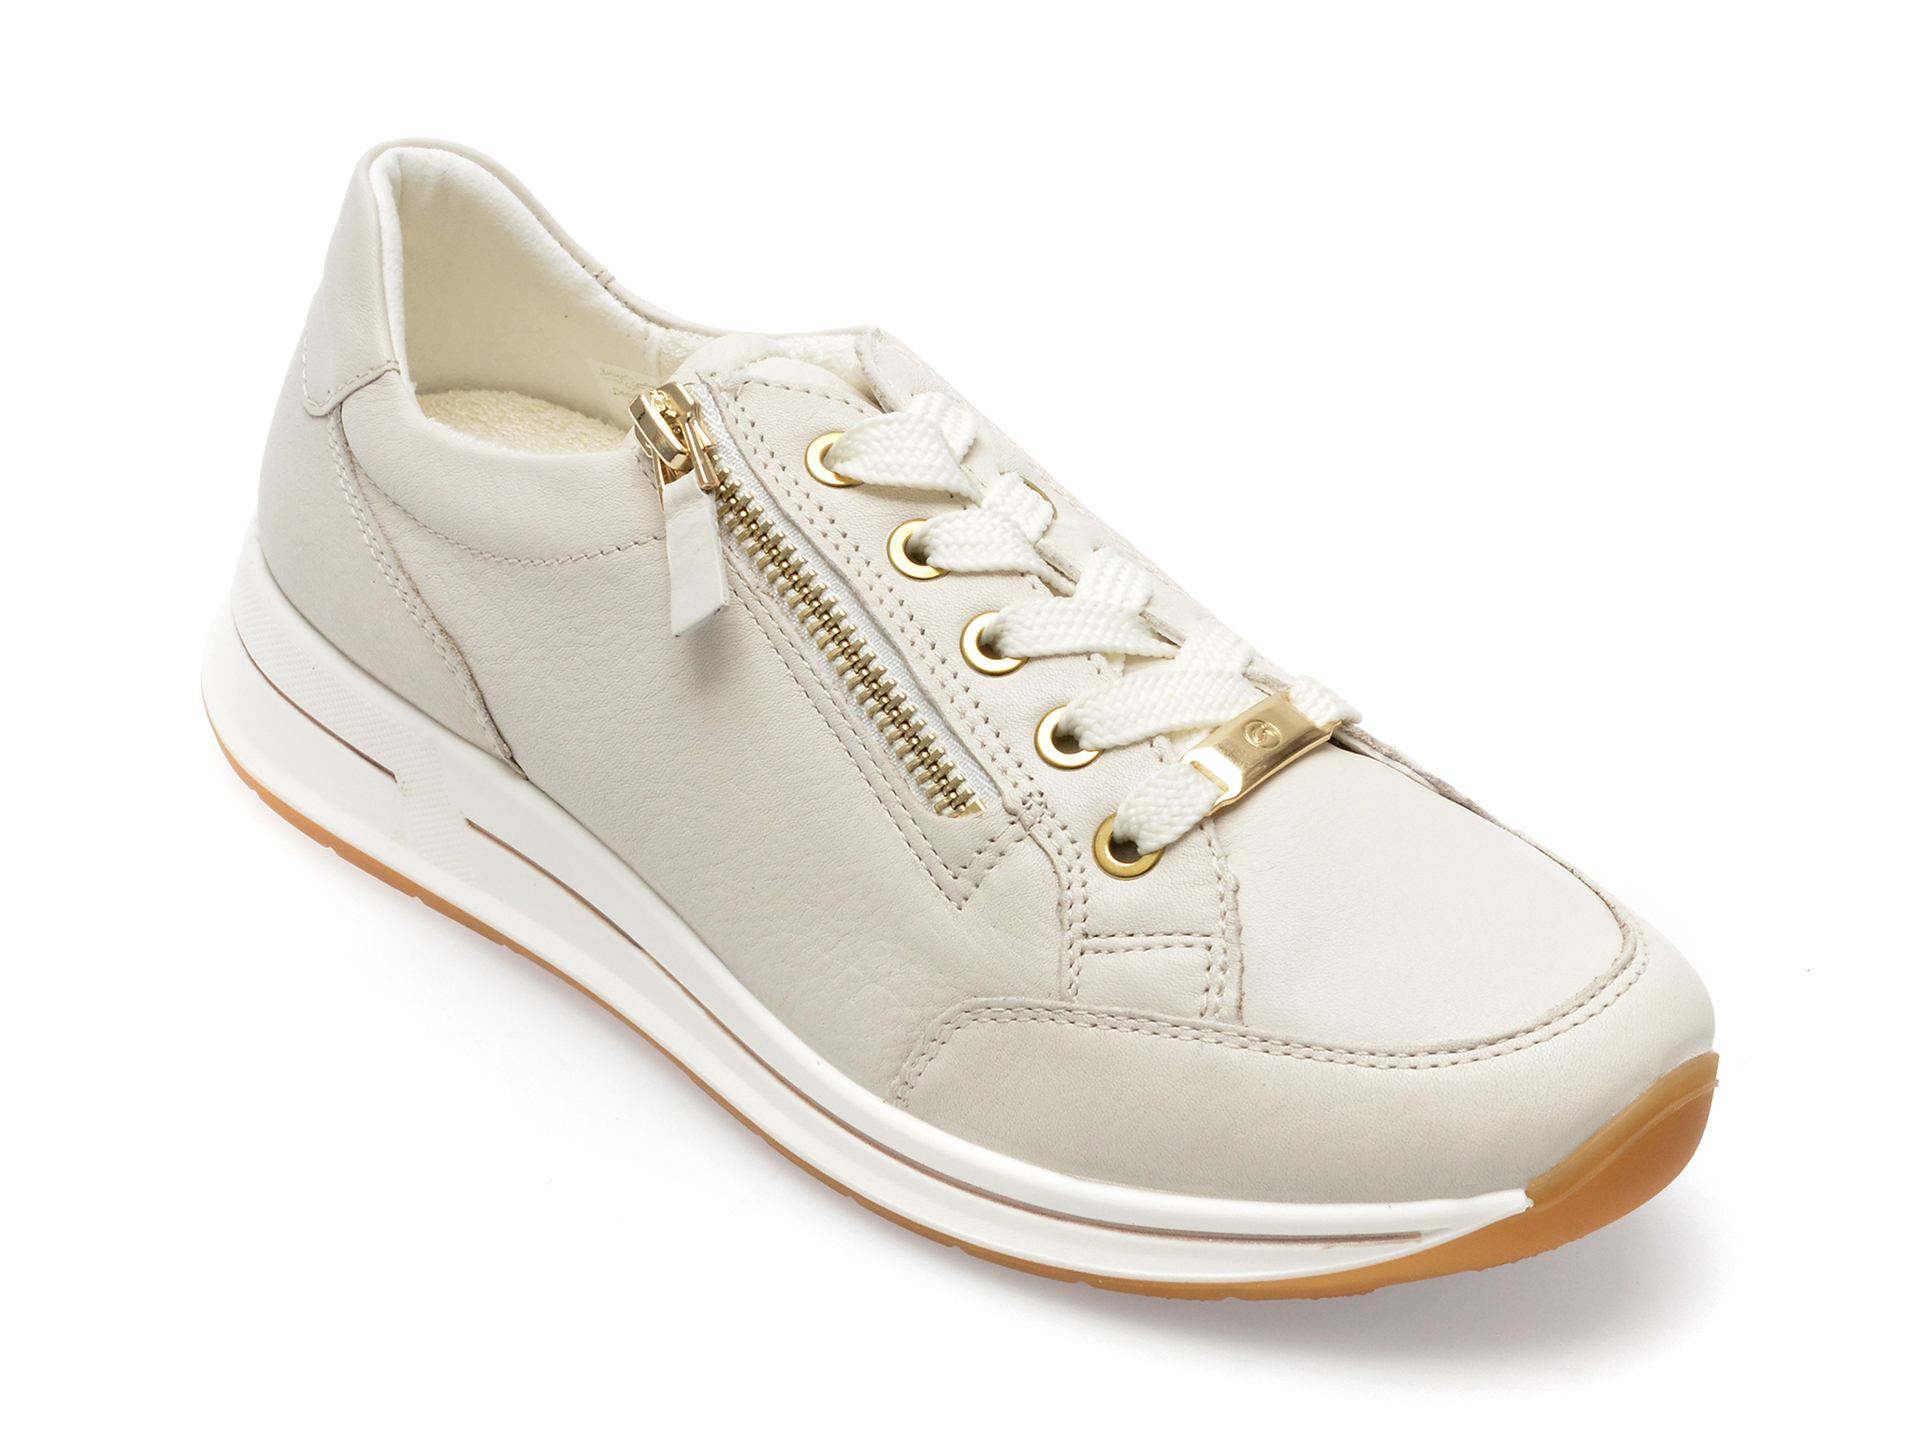 Pantofi ARA albi, 24801, din piele naturala /sale